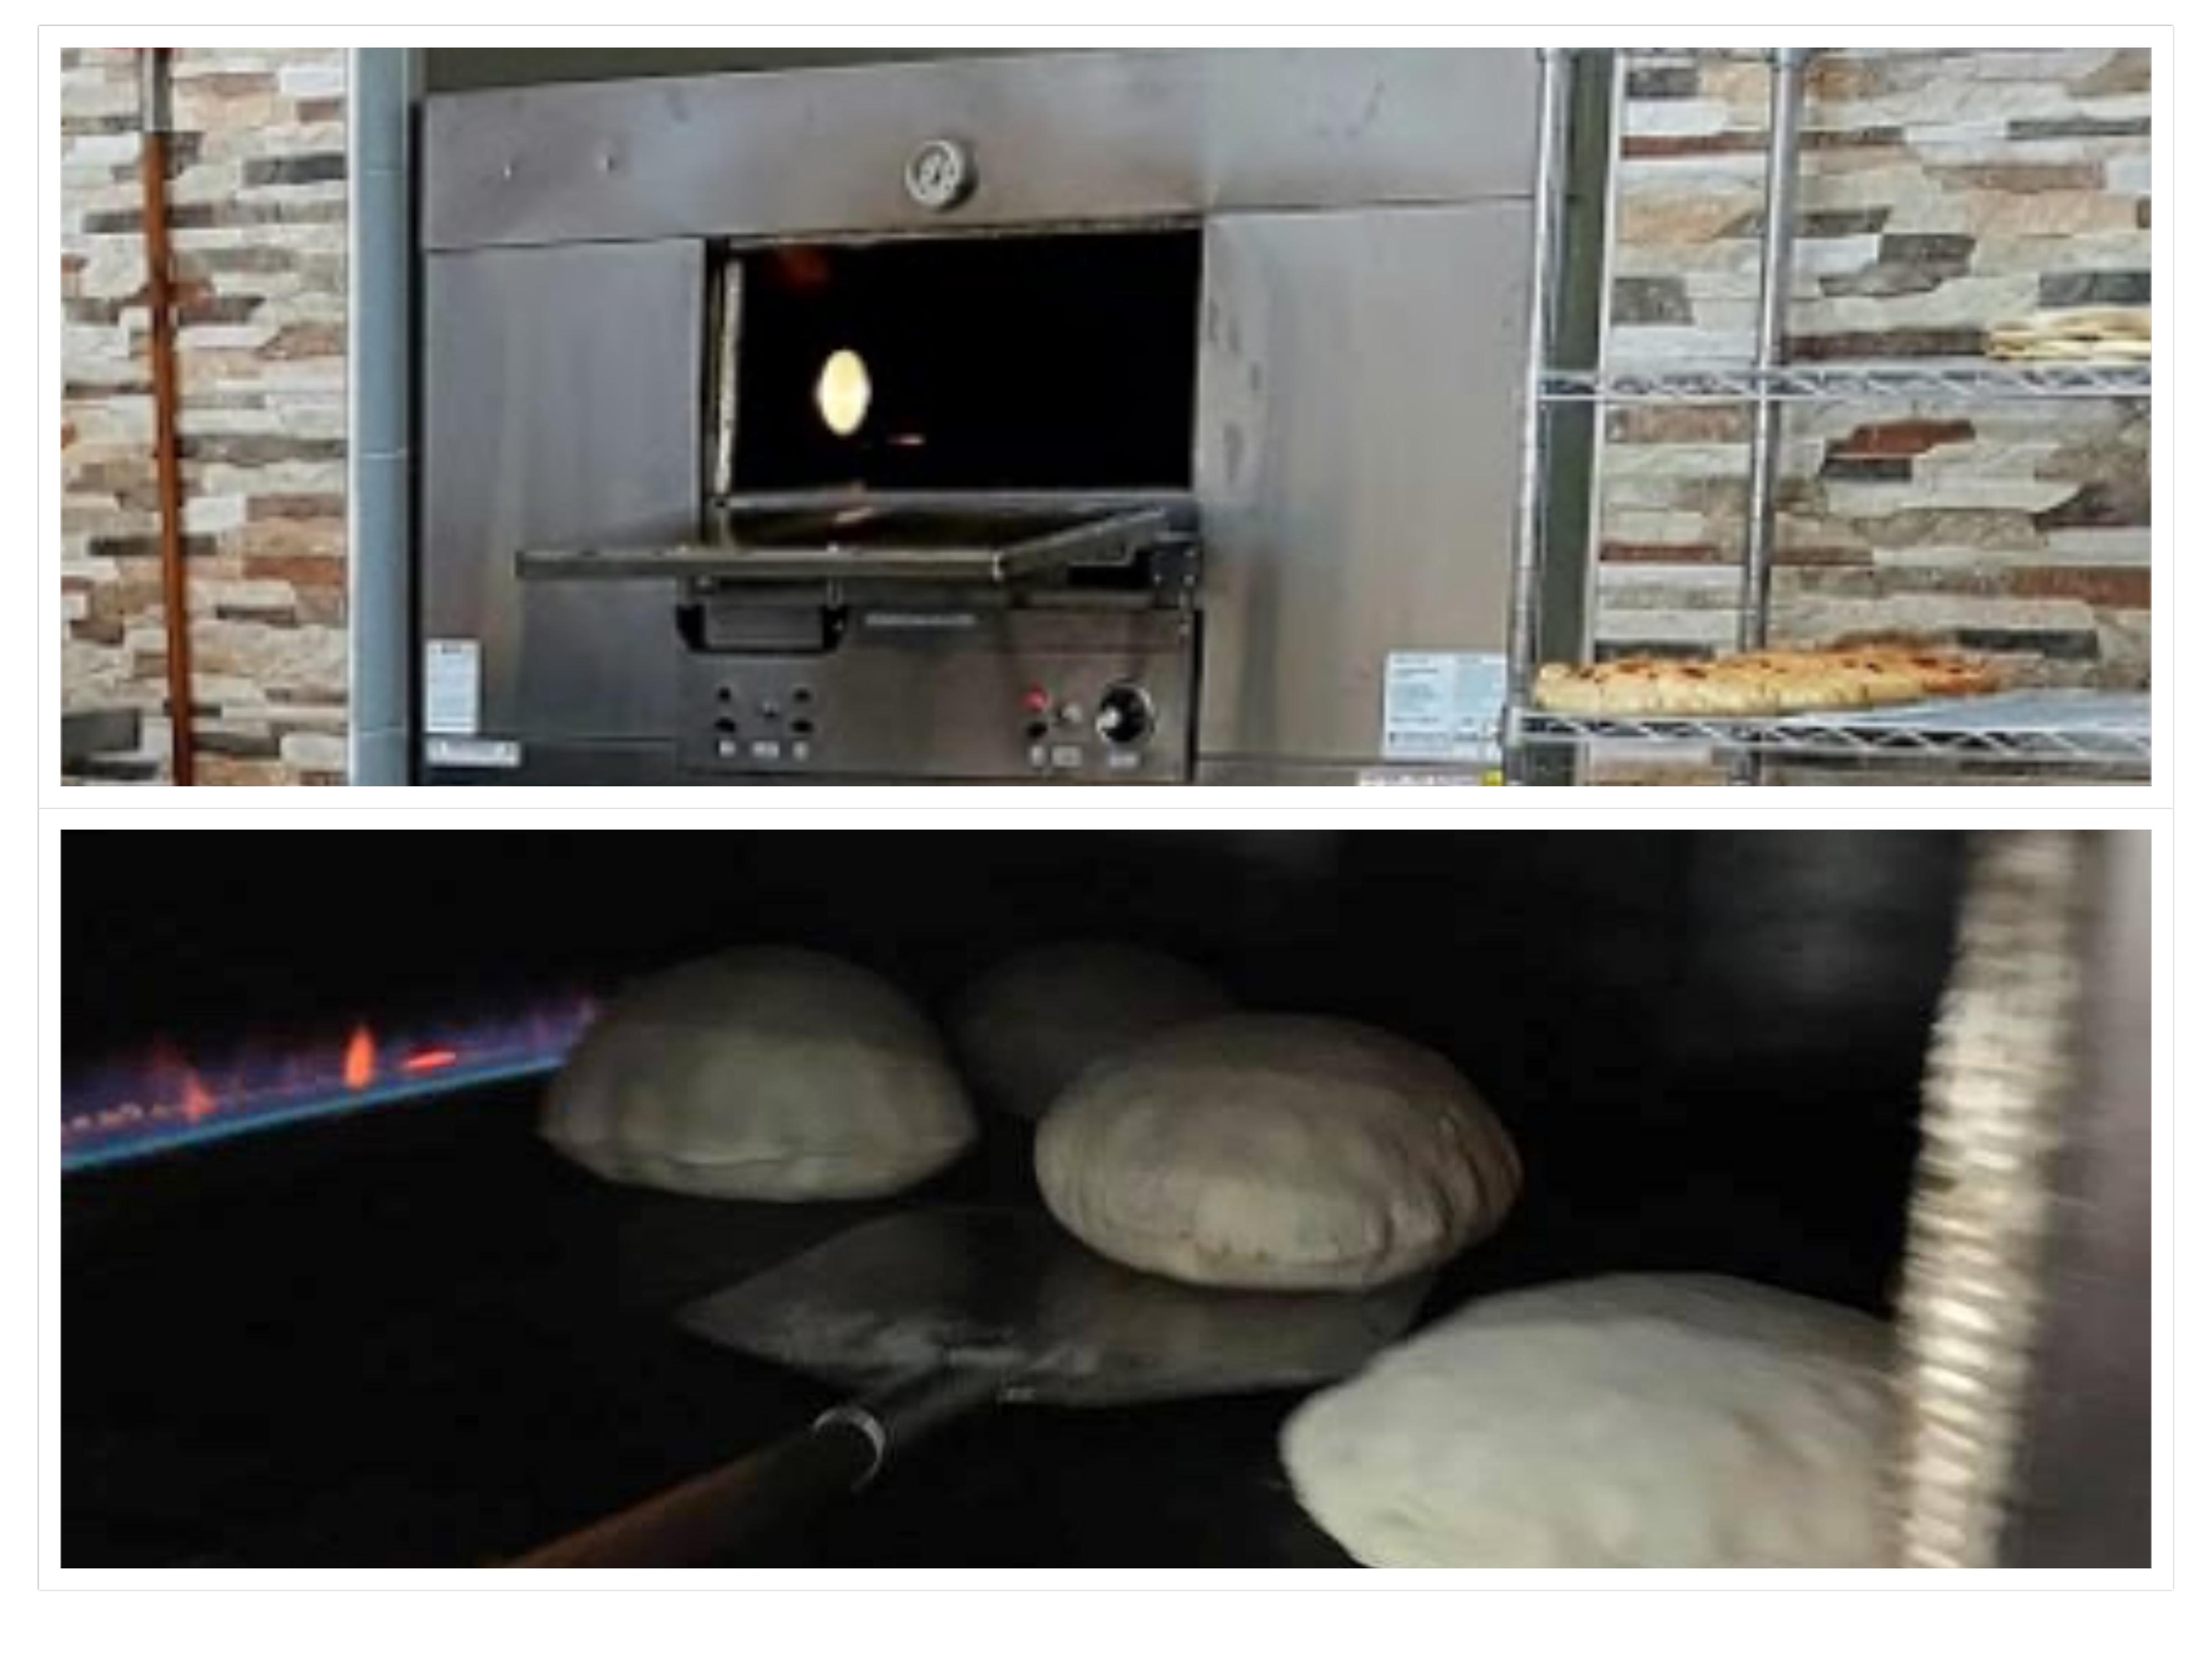 Watany Manoushi Lebanese Bakery & Grocery, Parkwood, QLD